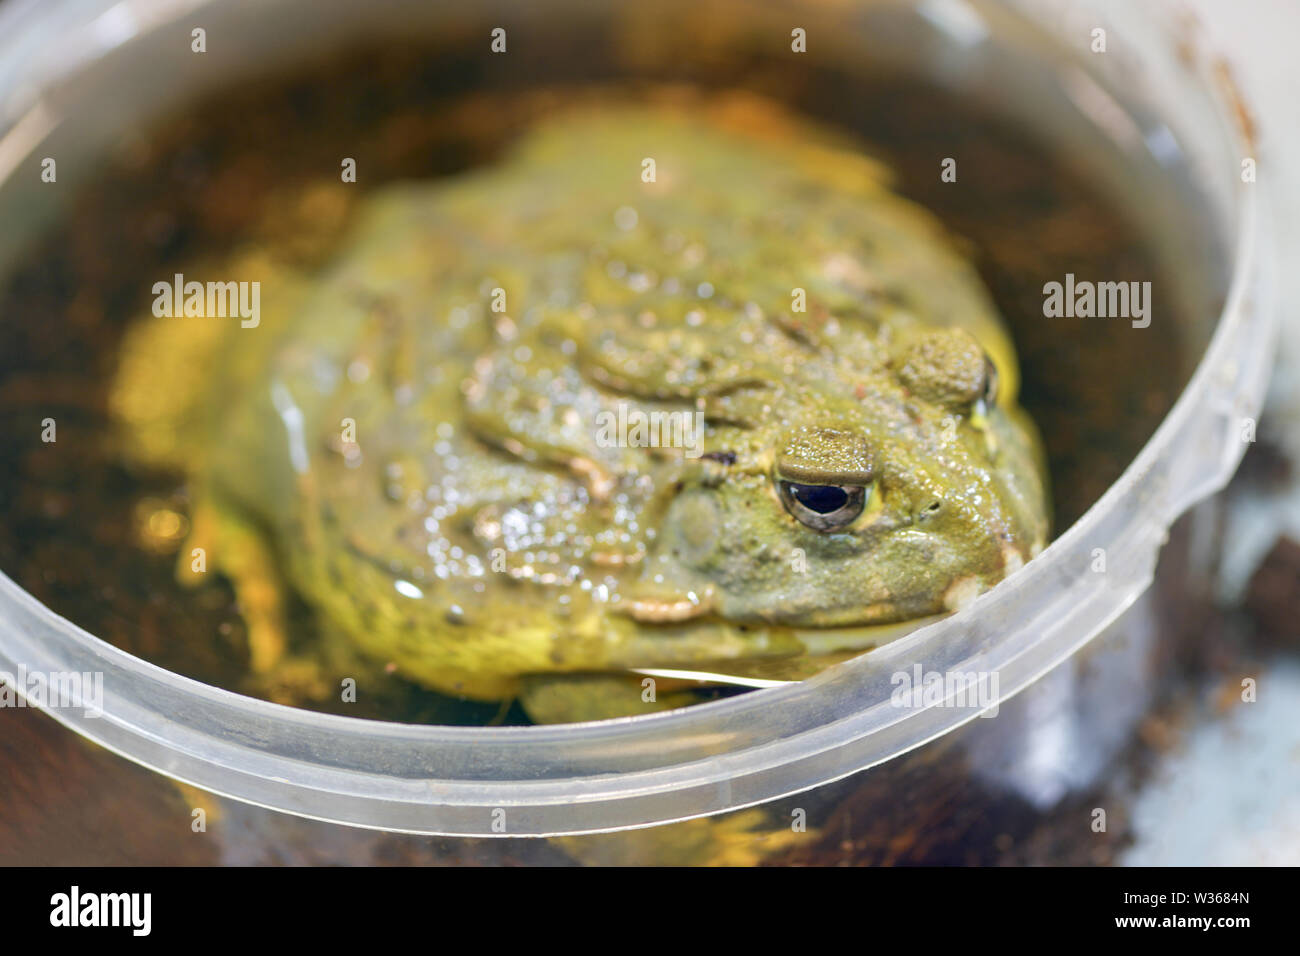 Pyxicephalus adspersus. Géant de l'Afrique de l'ouaouaron. La grenouille verte est une plante à l'eau, creuser grenouille assis dans un seau en plastique à proximité - dans un terrarium. Banque D'Images